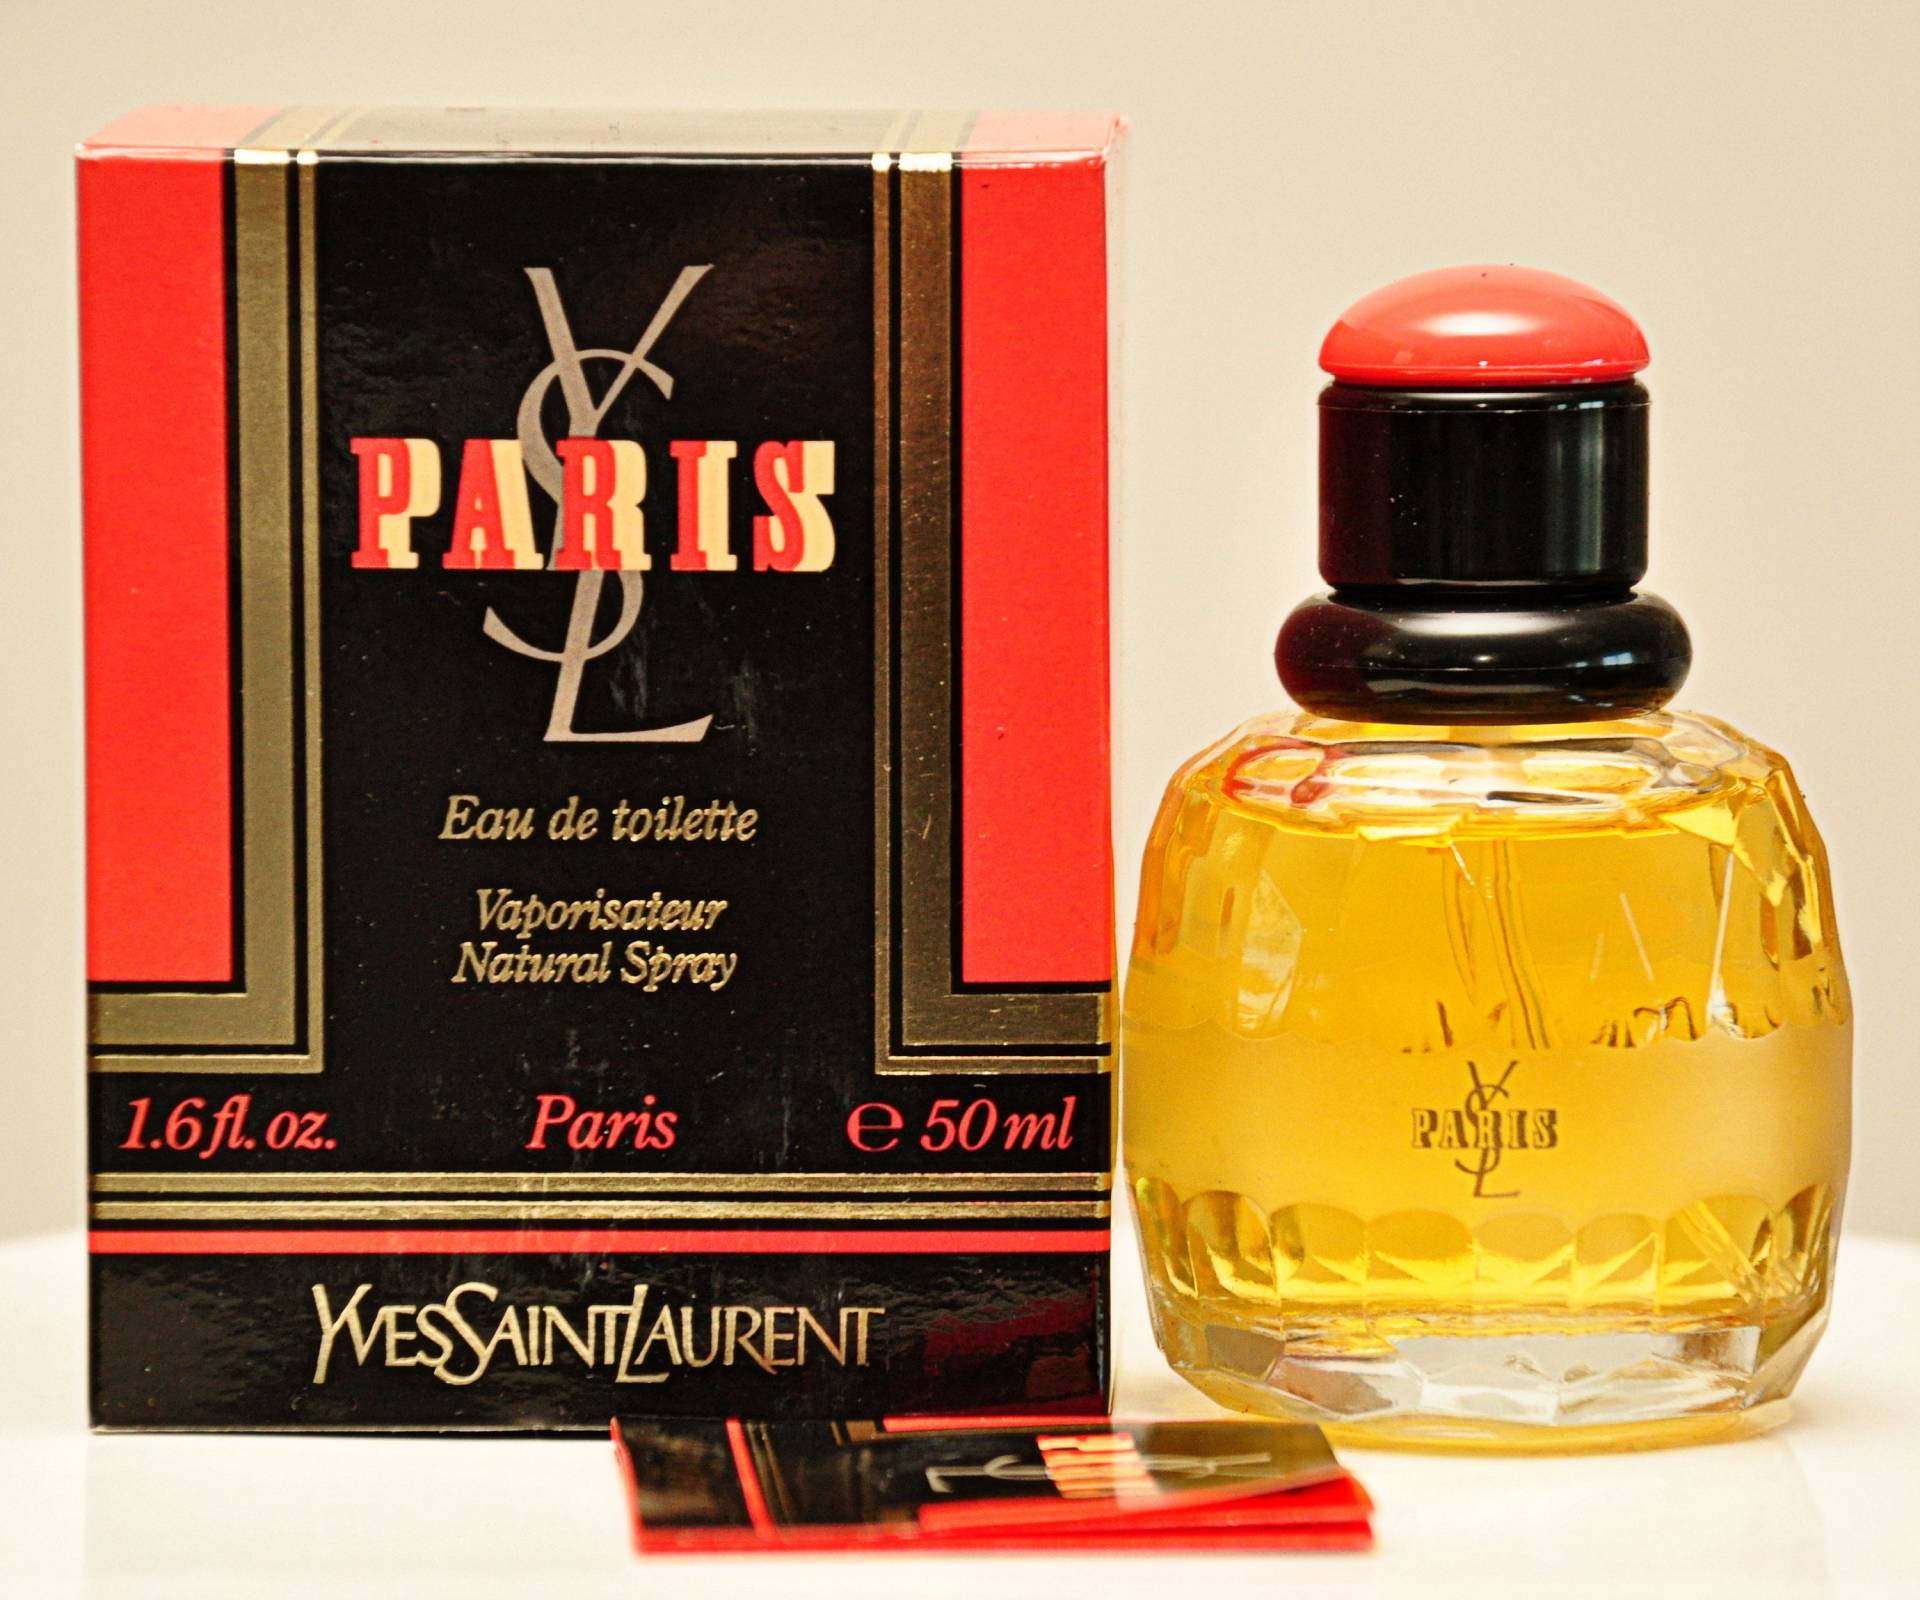 Yves Saint Laurent Paris Eau De Toilette Edt 50Ml Parfüm Spray Frau Rare Vintage 1983 von Etsy - YourVintagePerfume